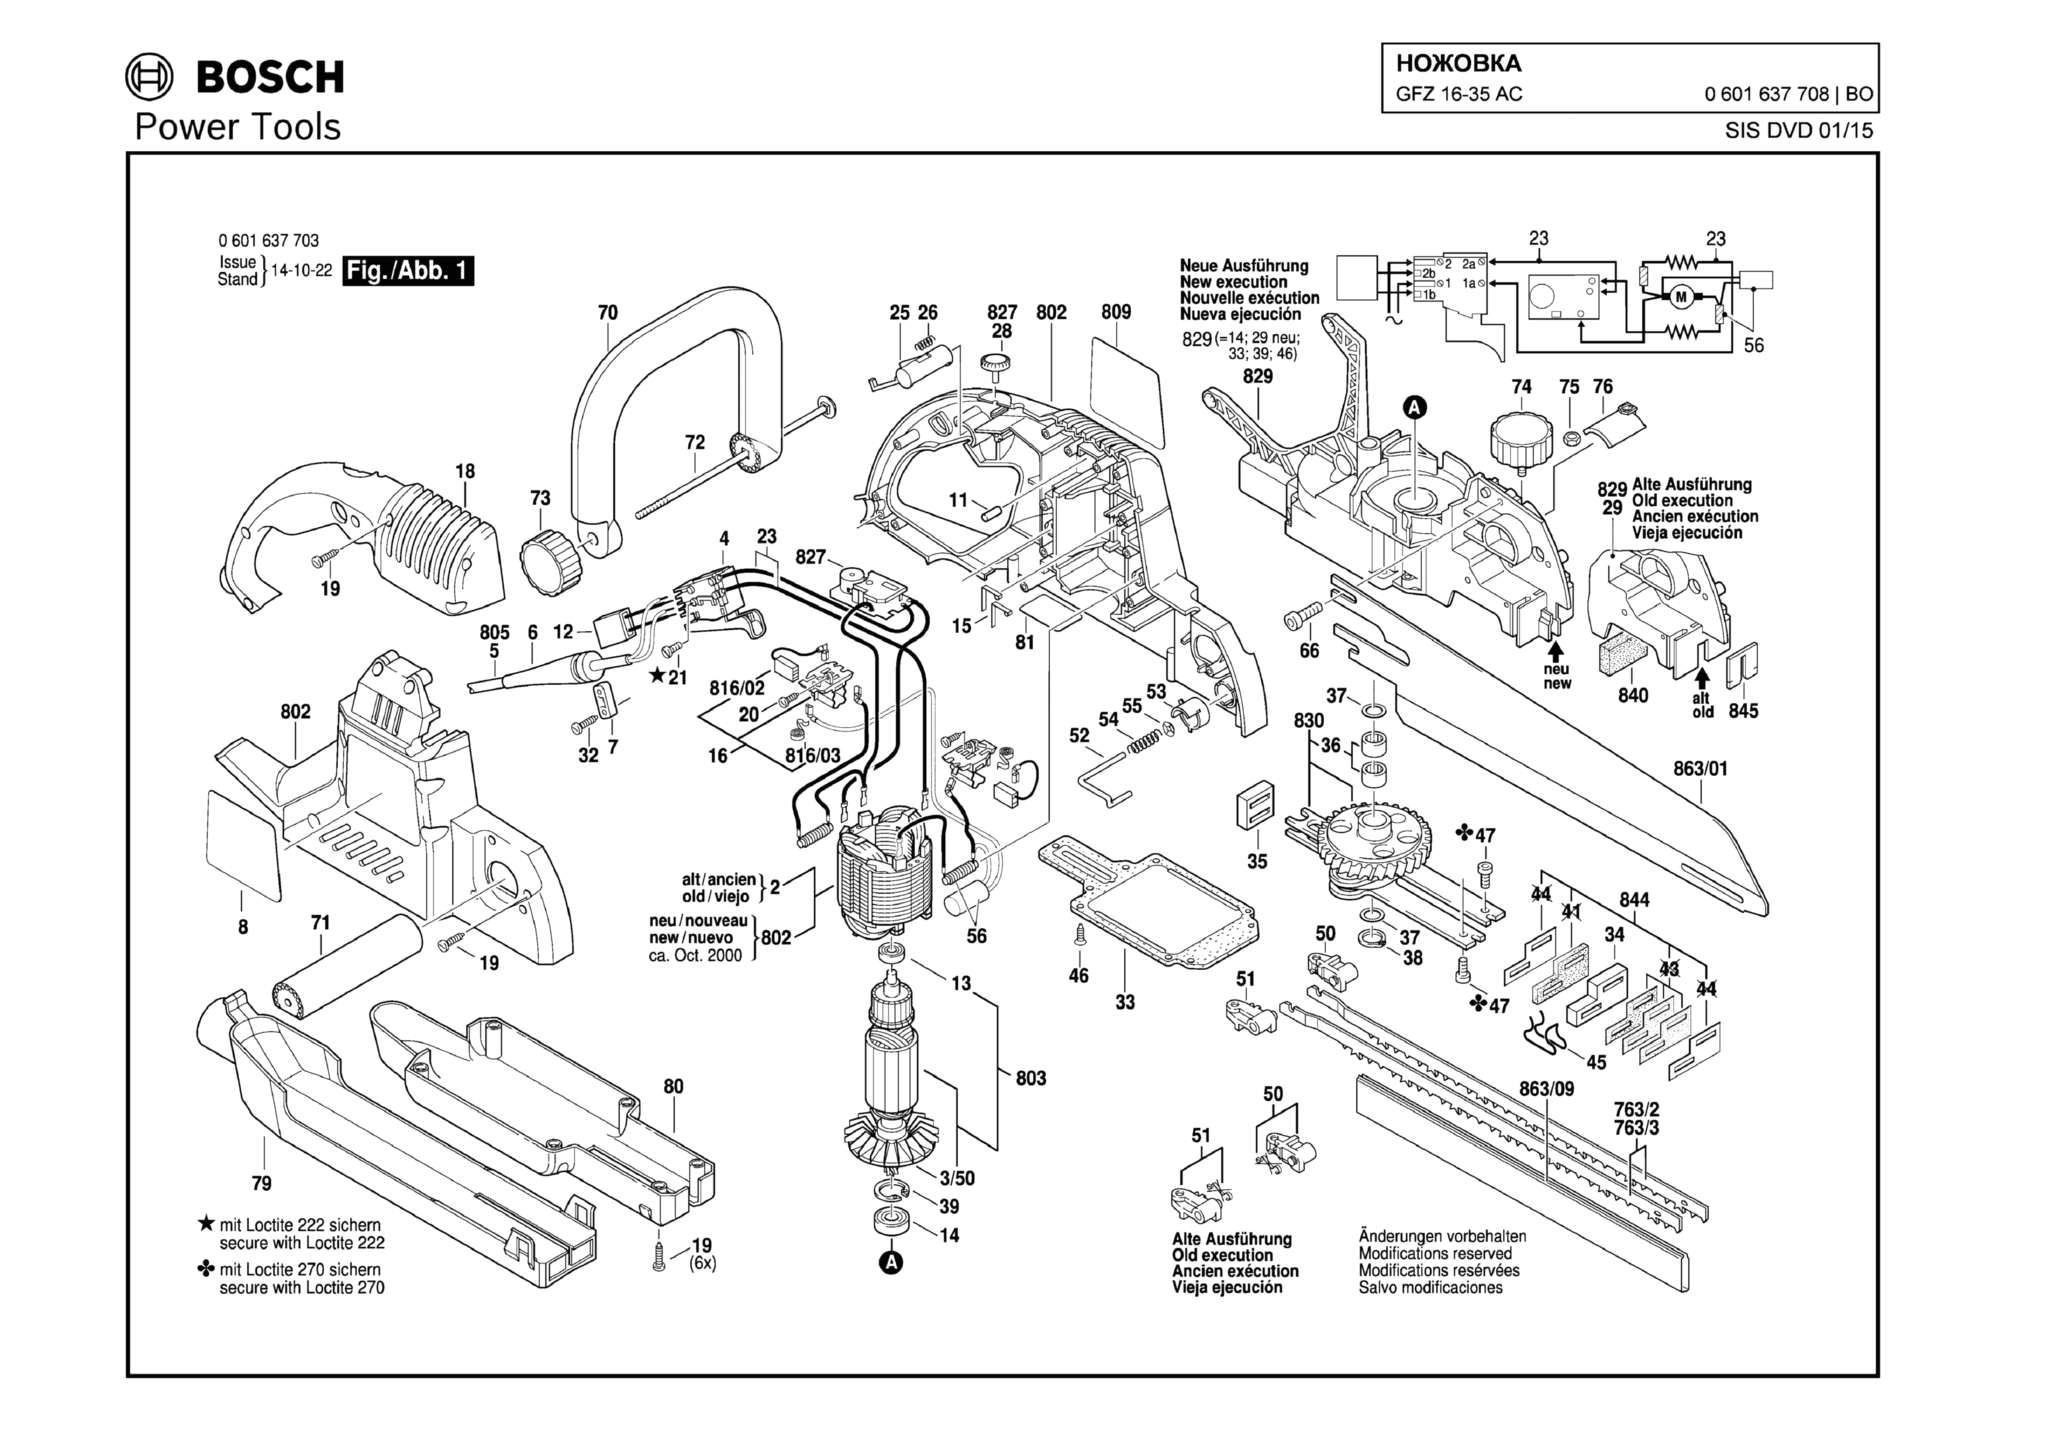 Запчасти, схема и деталировка Bosch GFZ 16-35 AC (ТИП 0601637708)